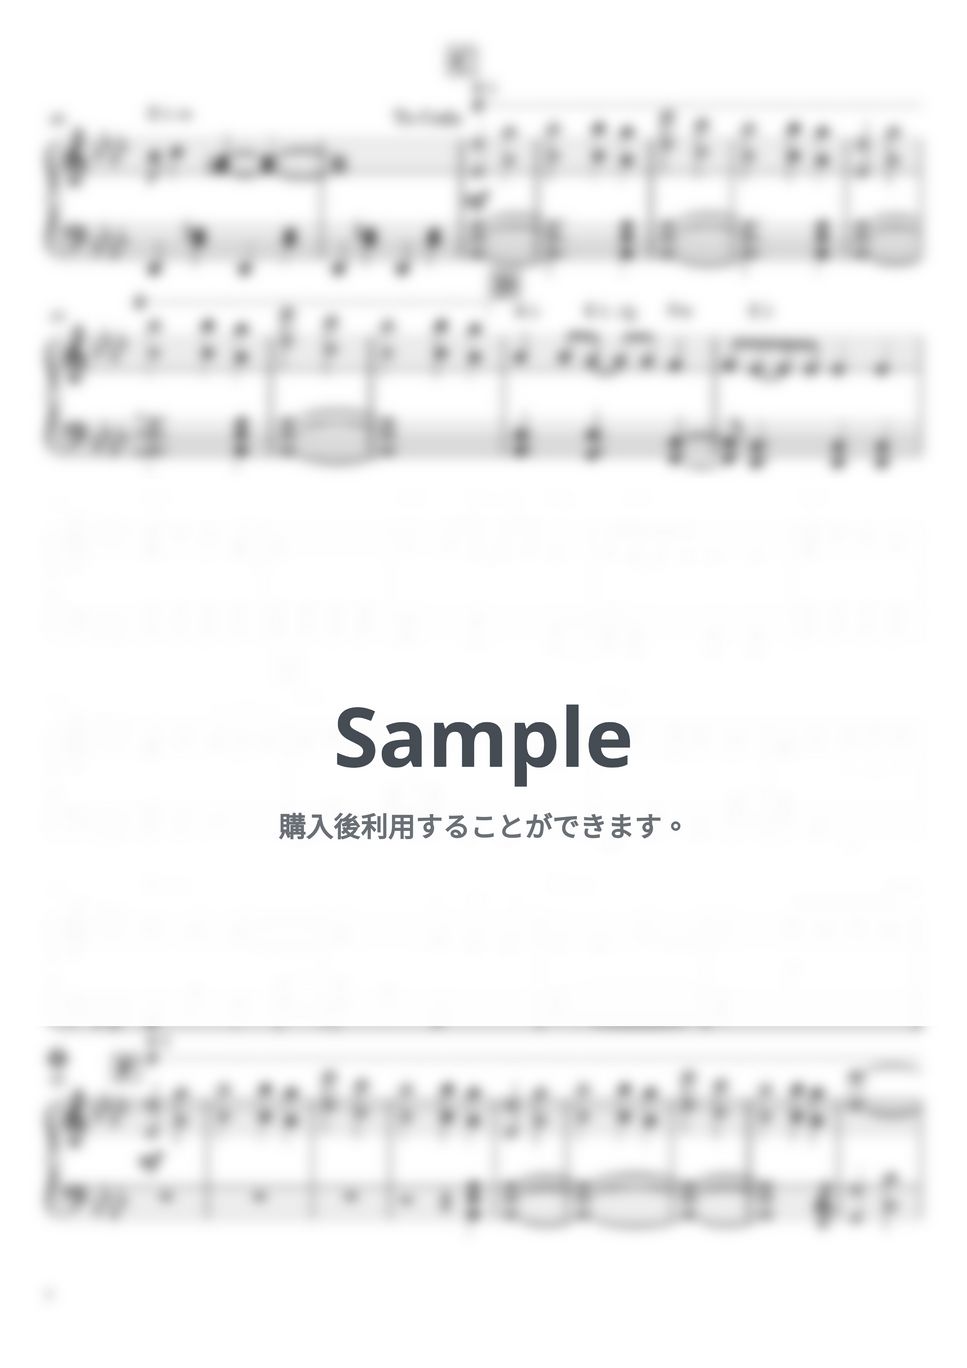 チャットモンチー - きらきらひかれ (ピアノソロ/中級/NONIOのCM曲) by 吉坂まどか